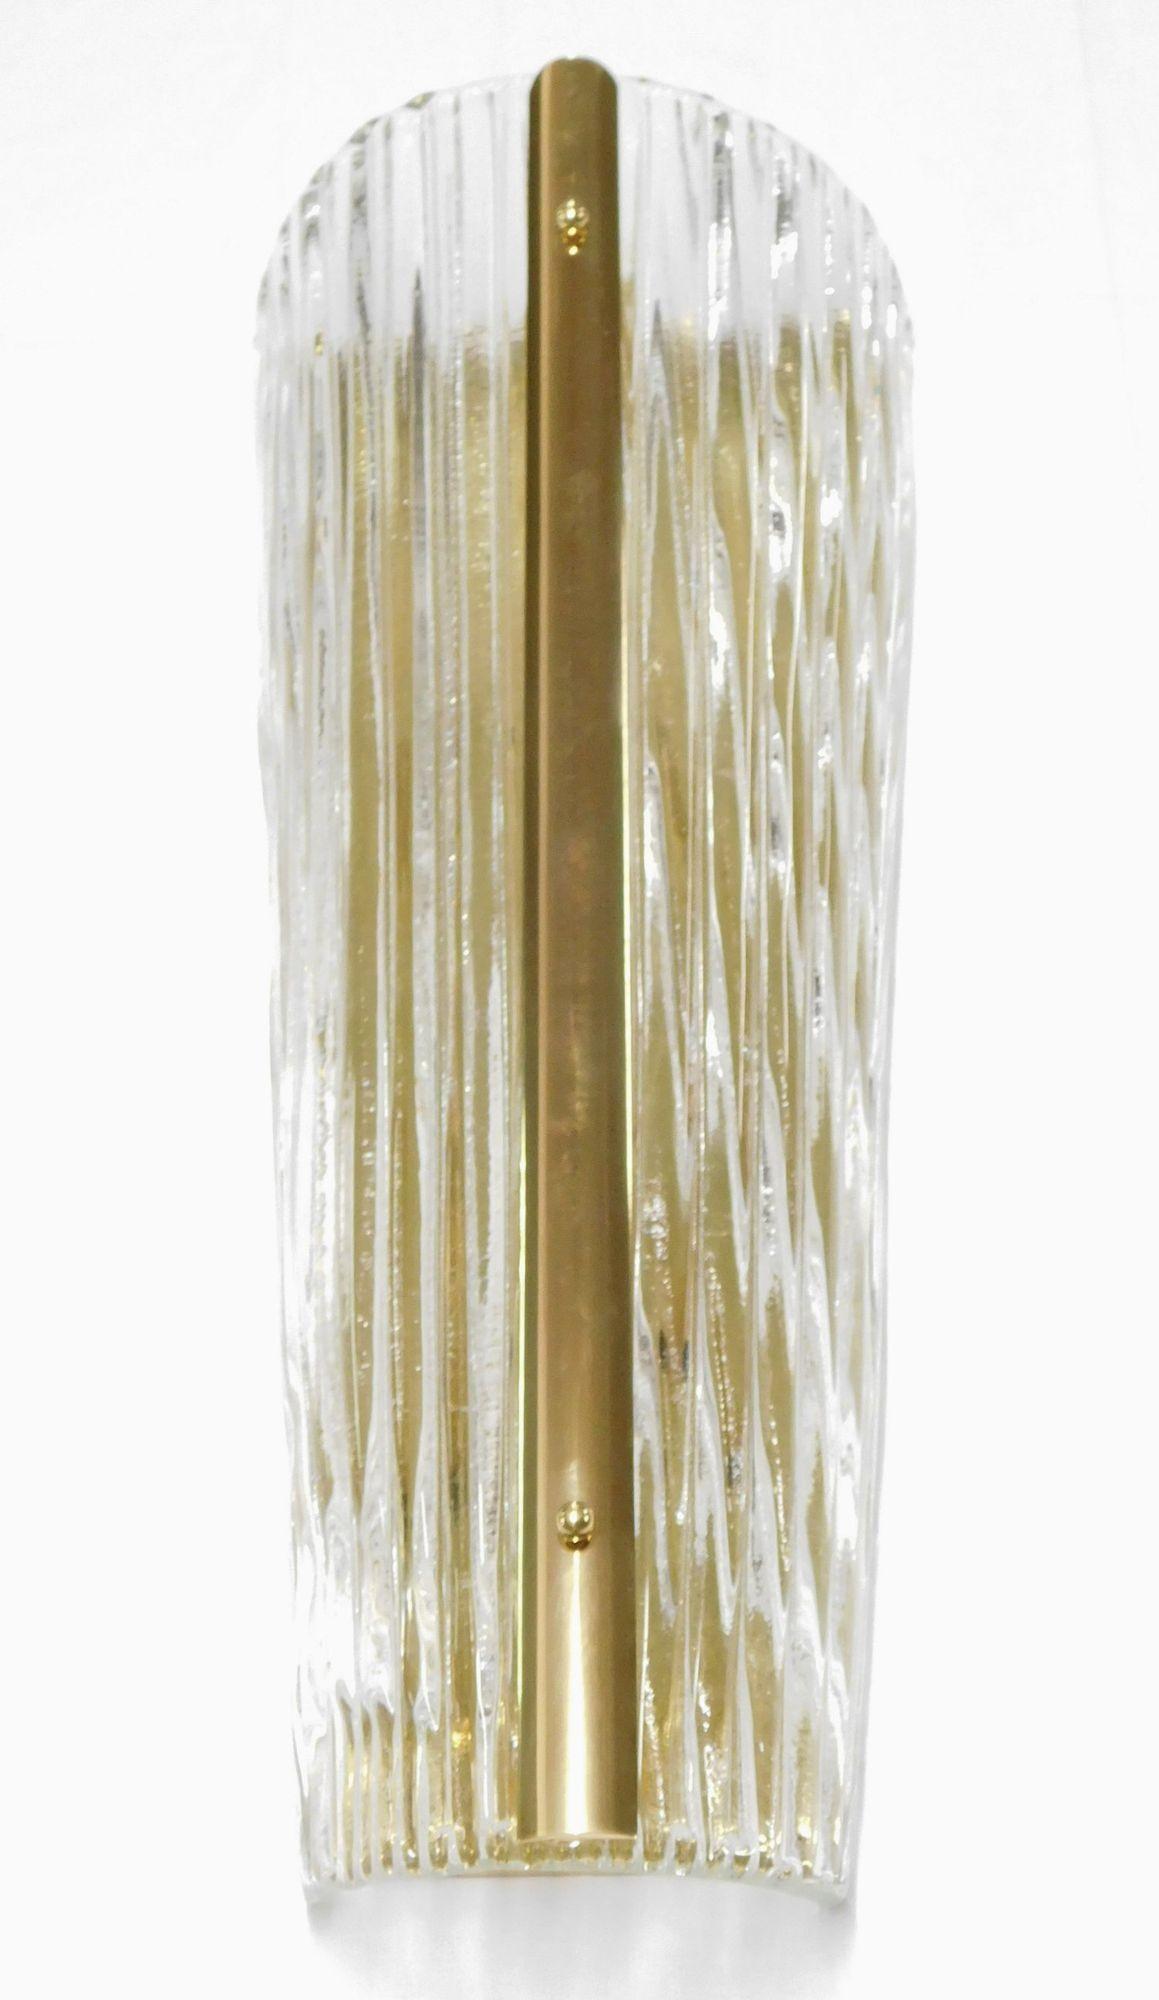 Ein Satz von drei italienischen Wandleuchten aus mundgeblasenem Murano-Glas, jede auf einem polierten Messingrahmen montiert. Das Murano-Glas wird in einem einzigartigen gebogenen Design mit linierten Mustern mundgeblasen.
*Neu verkabelt, um den